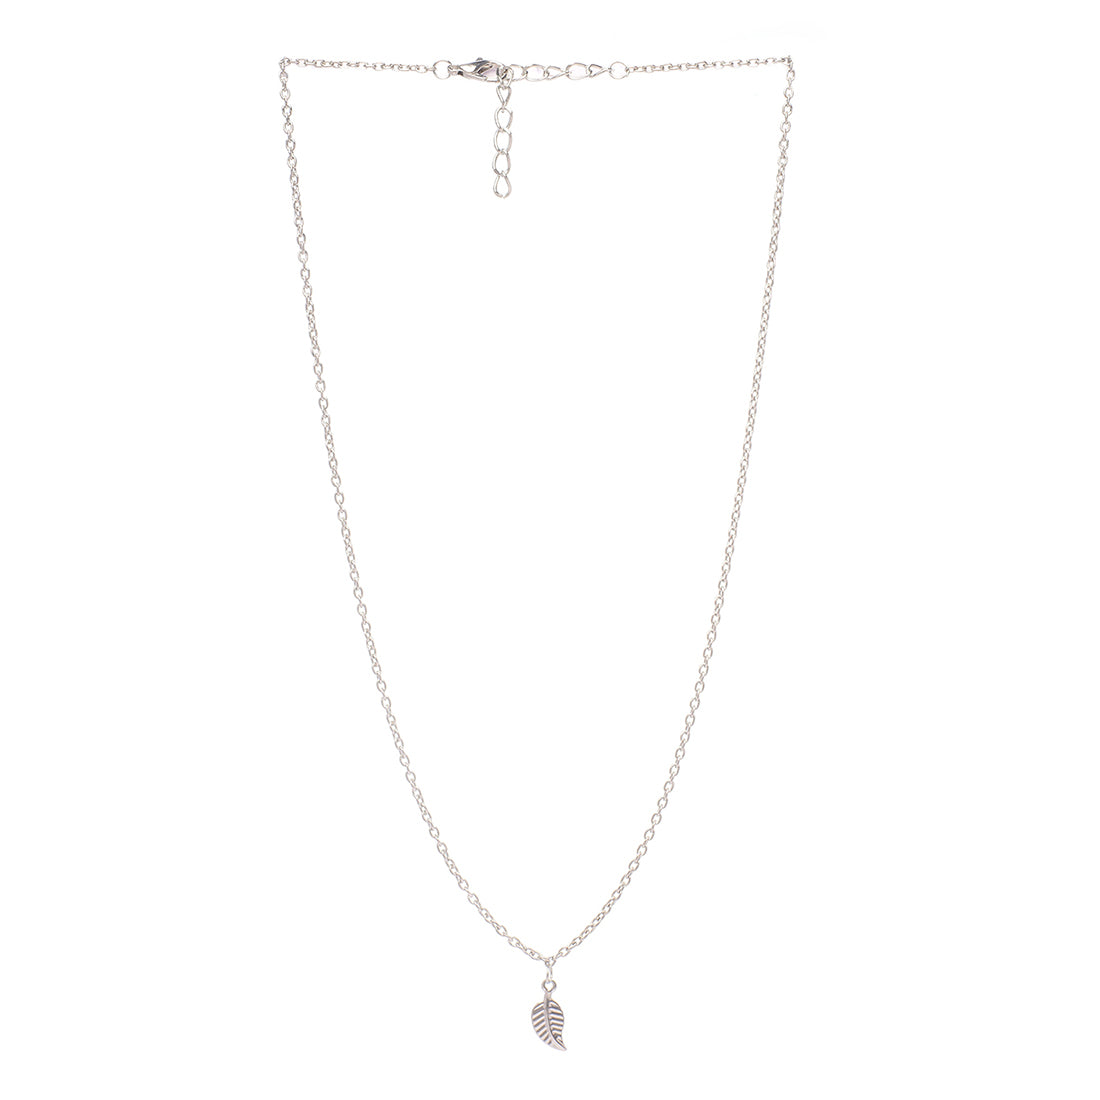 Elegant Silver-Toned Leaf Pendant Necklace